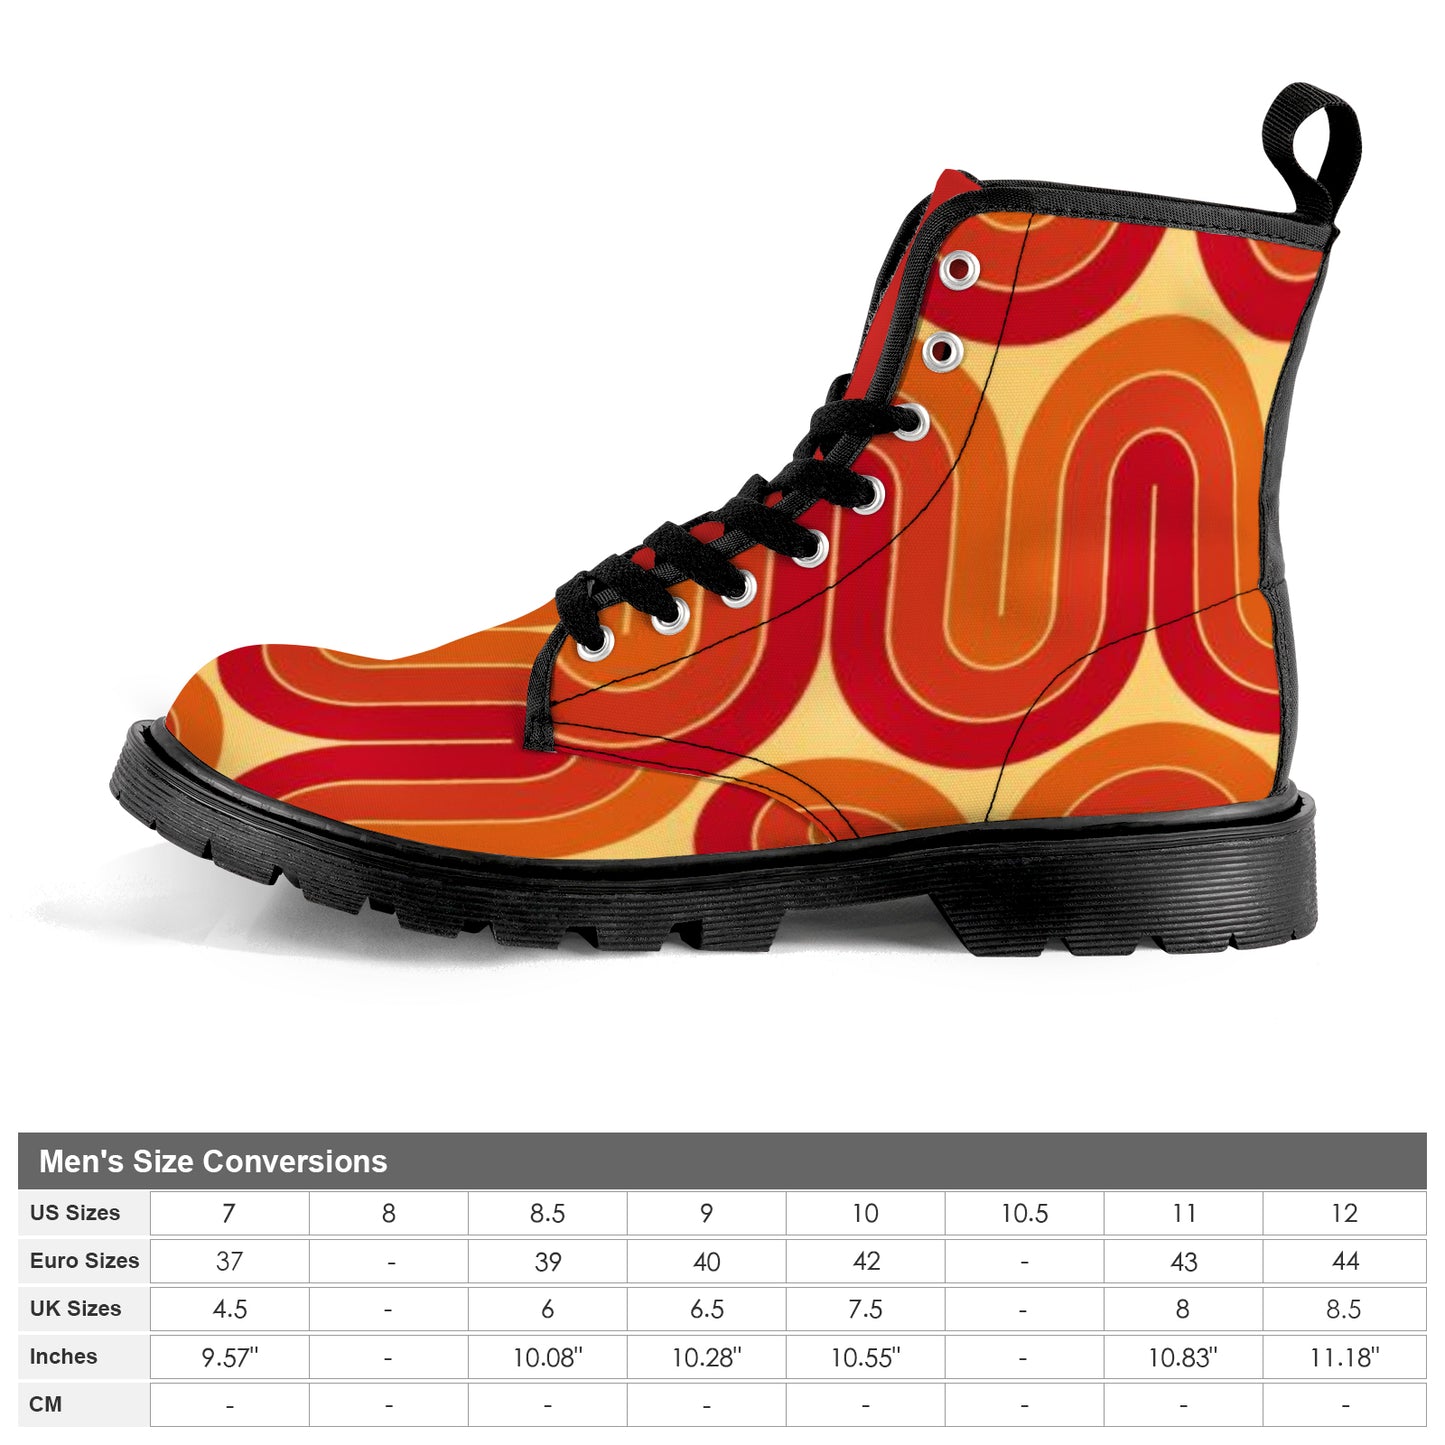 Men's Lace Up Canvas Boots - Retro (Orange & Red)